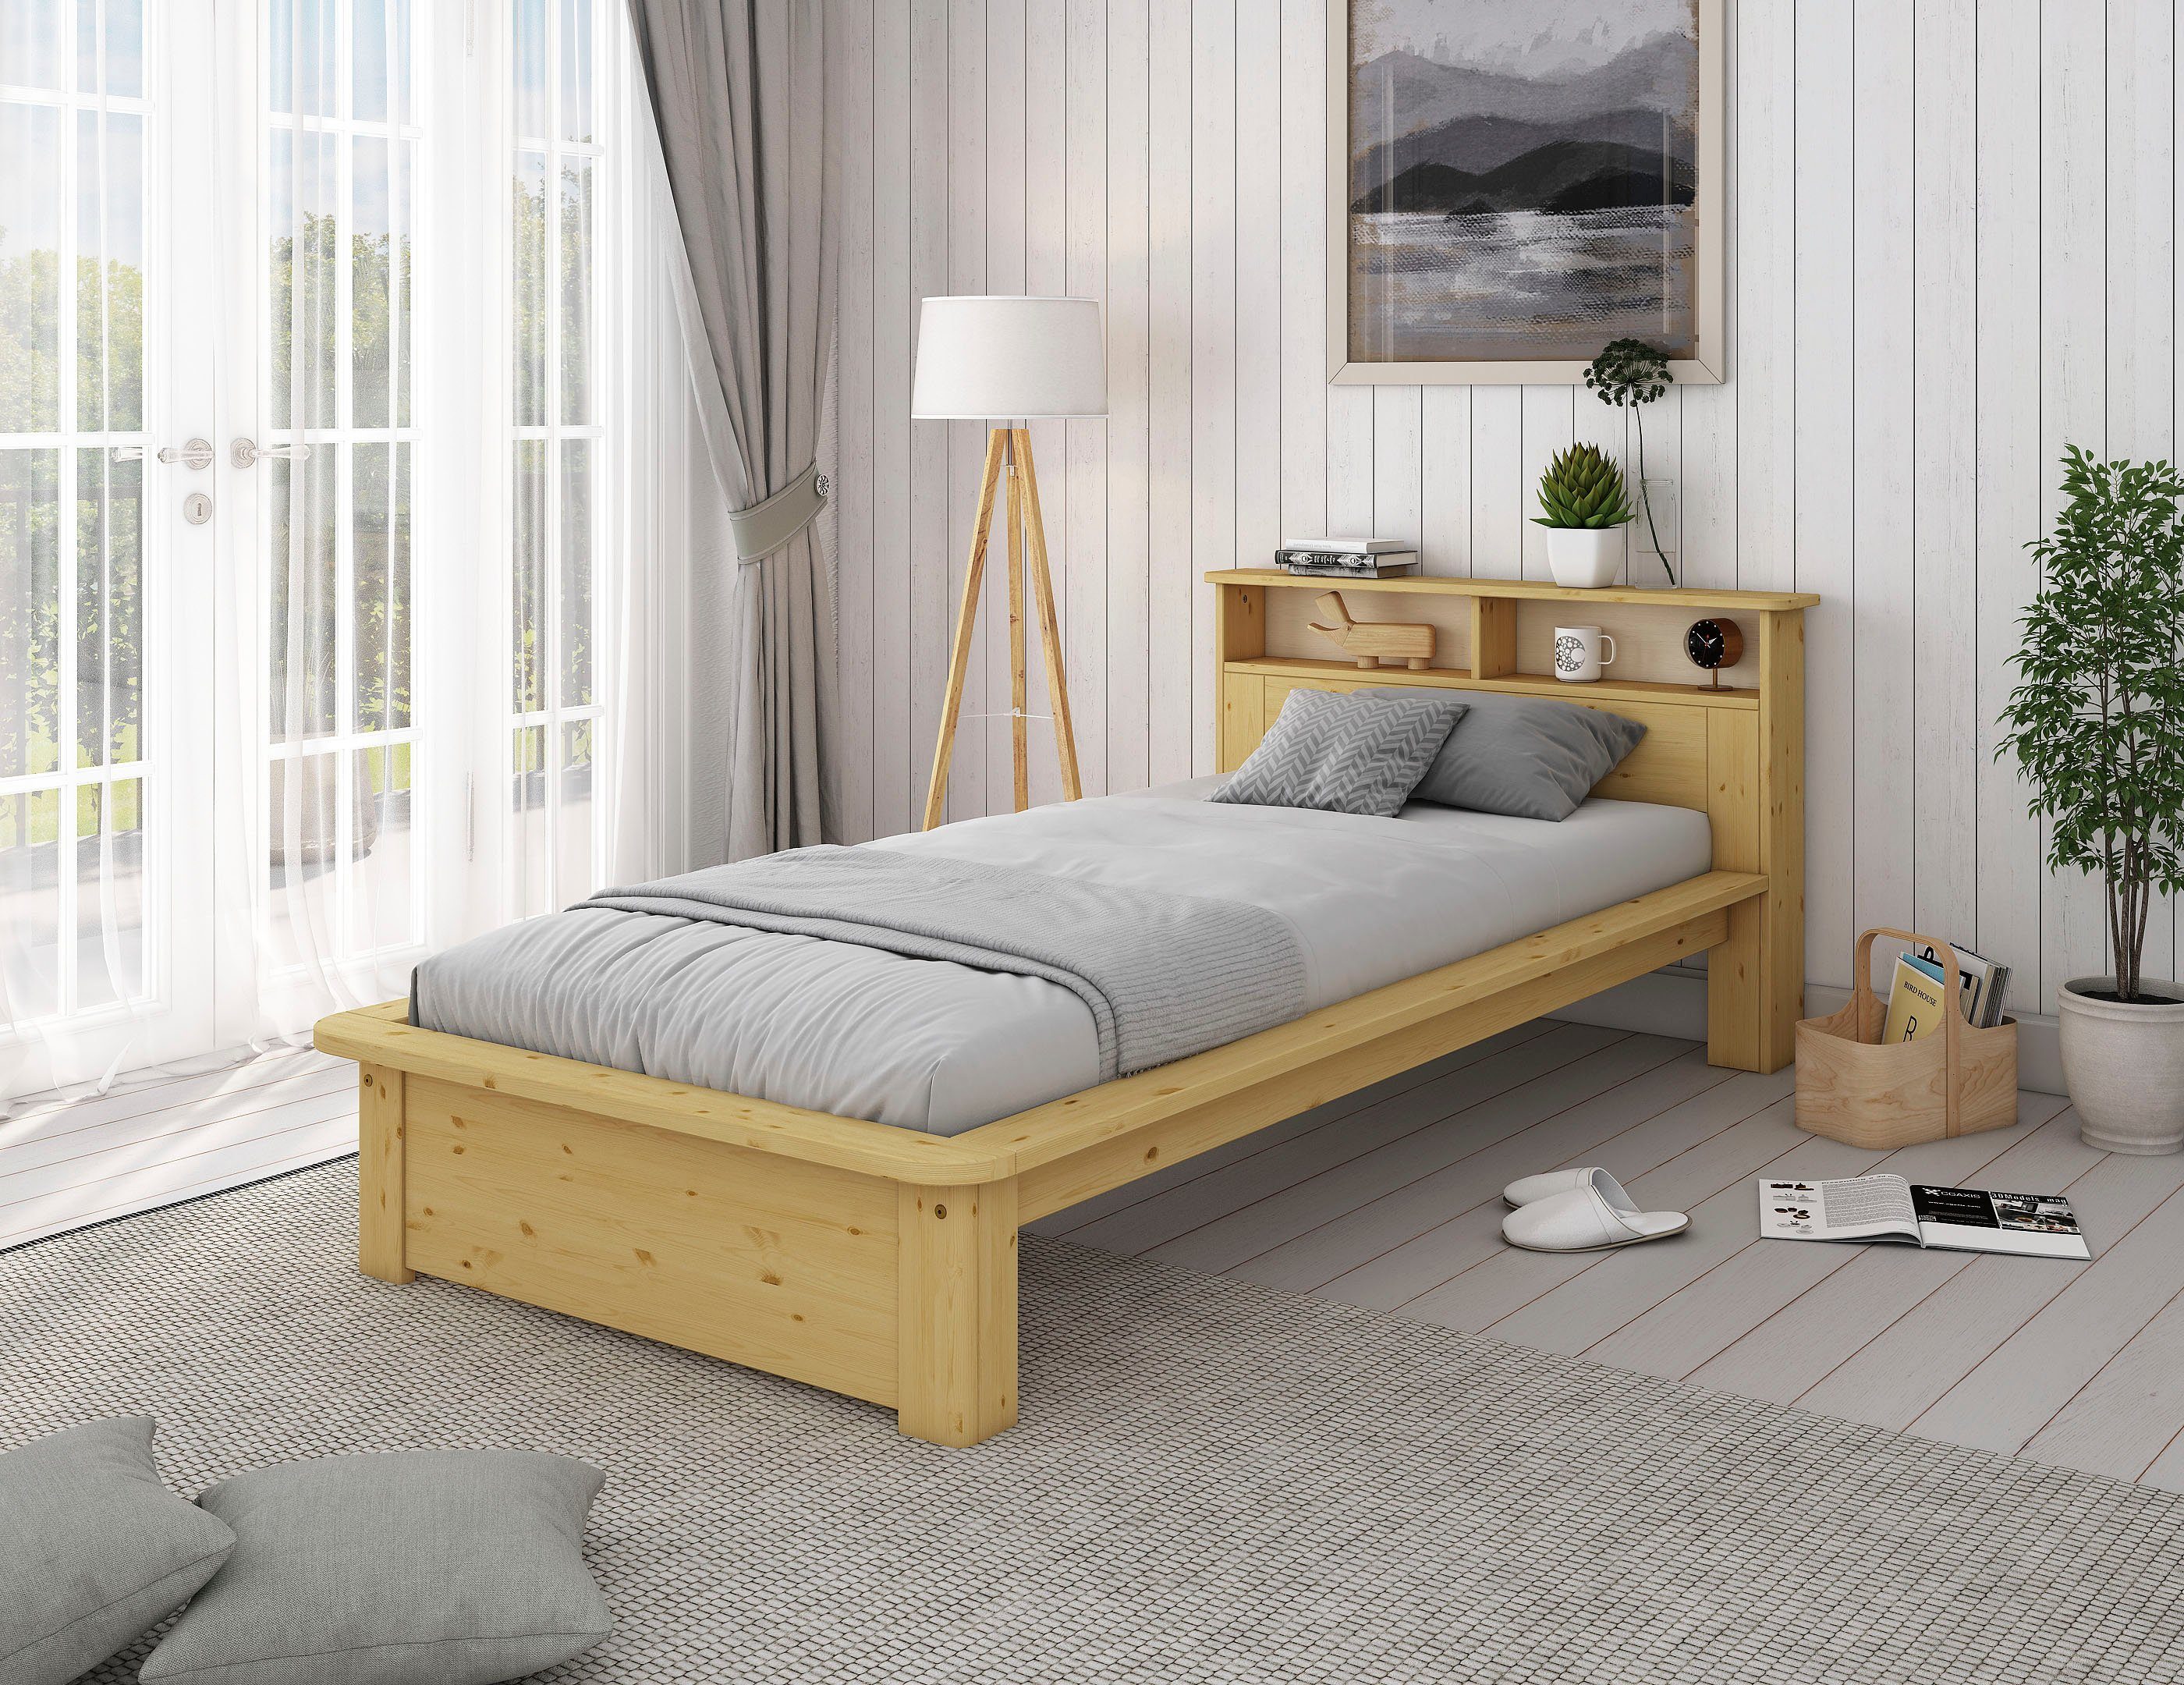 affaire Kopfteil, mit optional BESTSELLER! Home Massivholz honigfarben "KERO" zertifiziertes Bett im Schublade (Kiefer), Stauraum